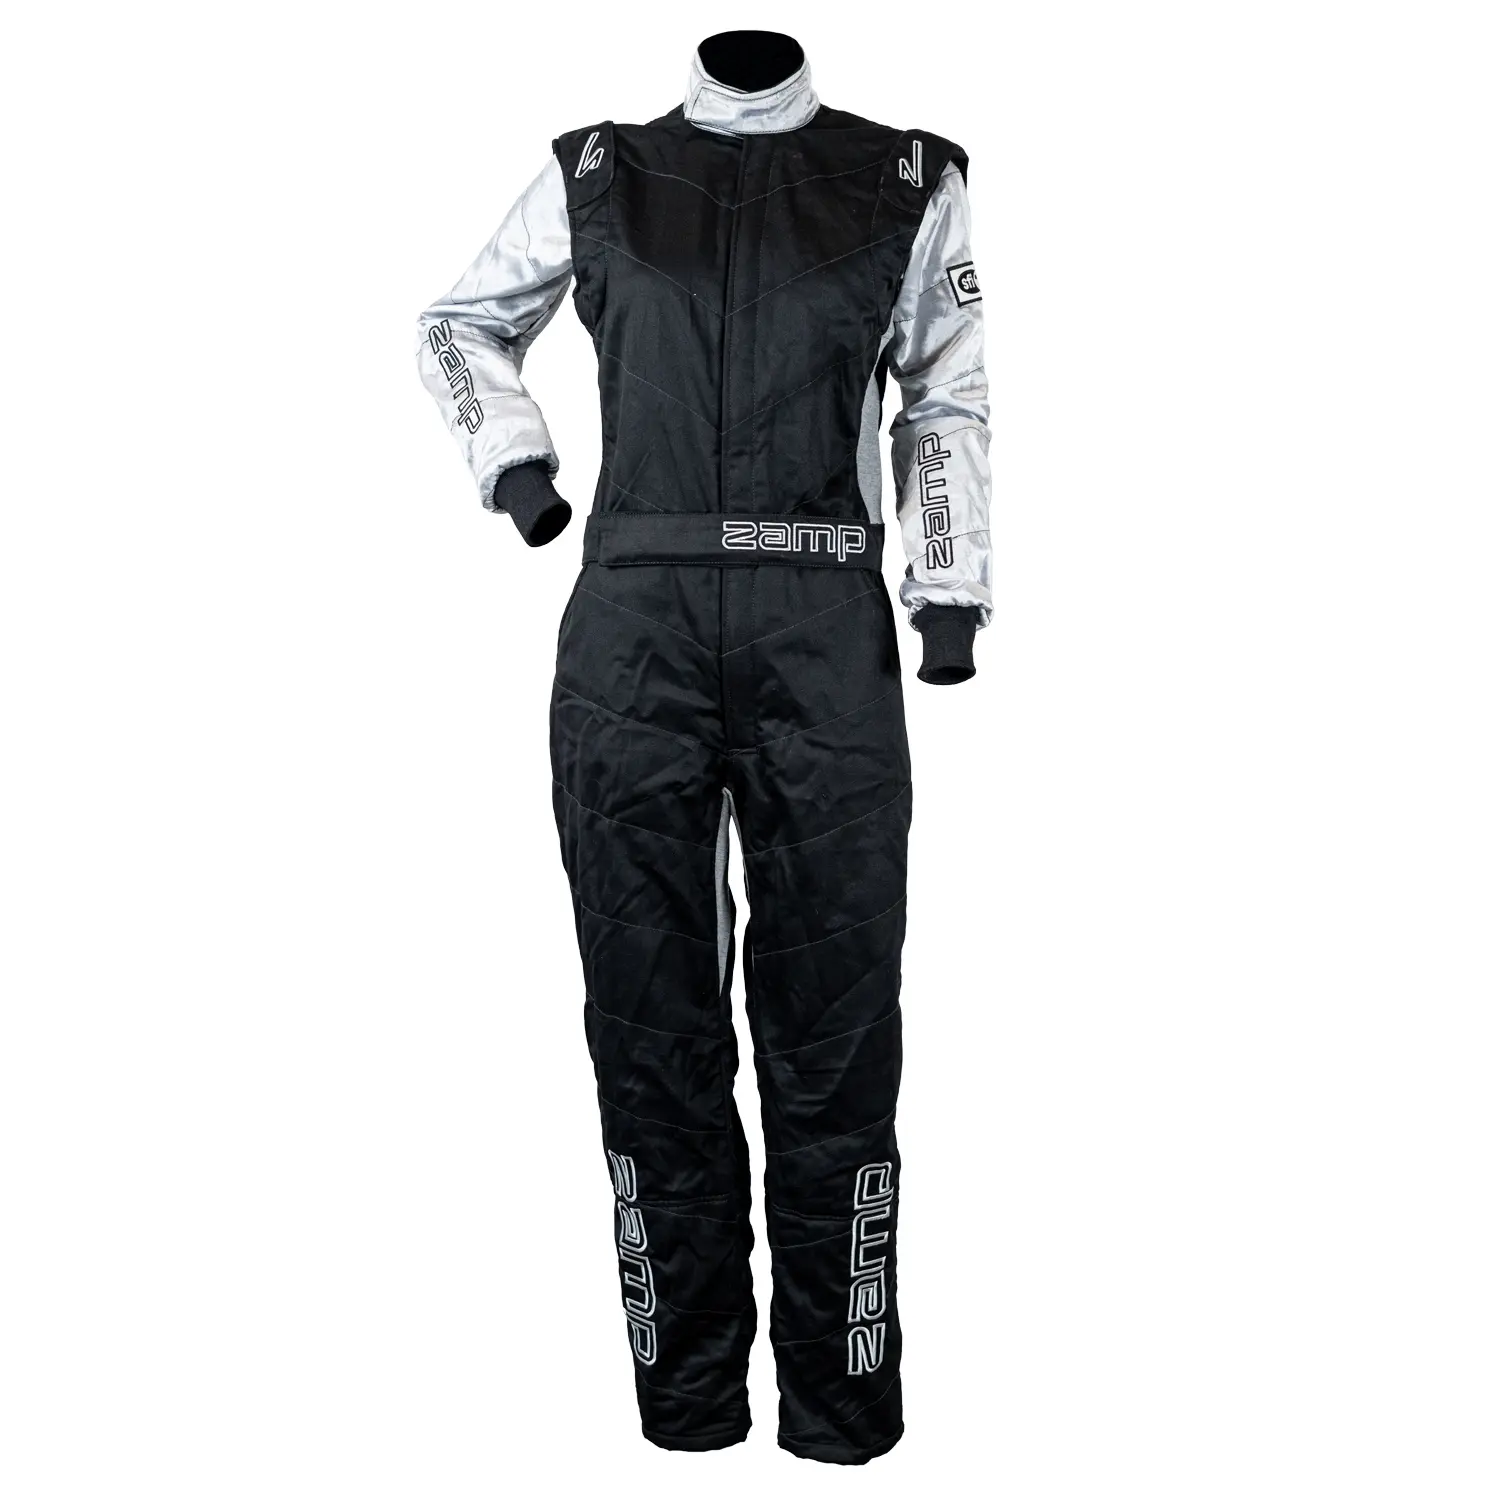 ZR-40 Womens Race Suit